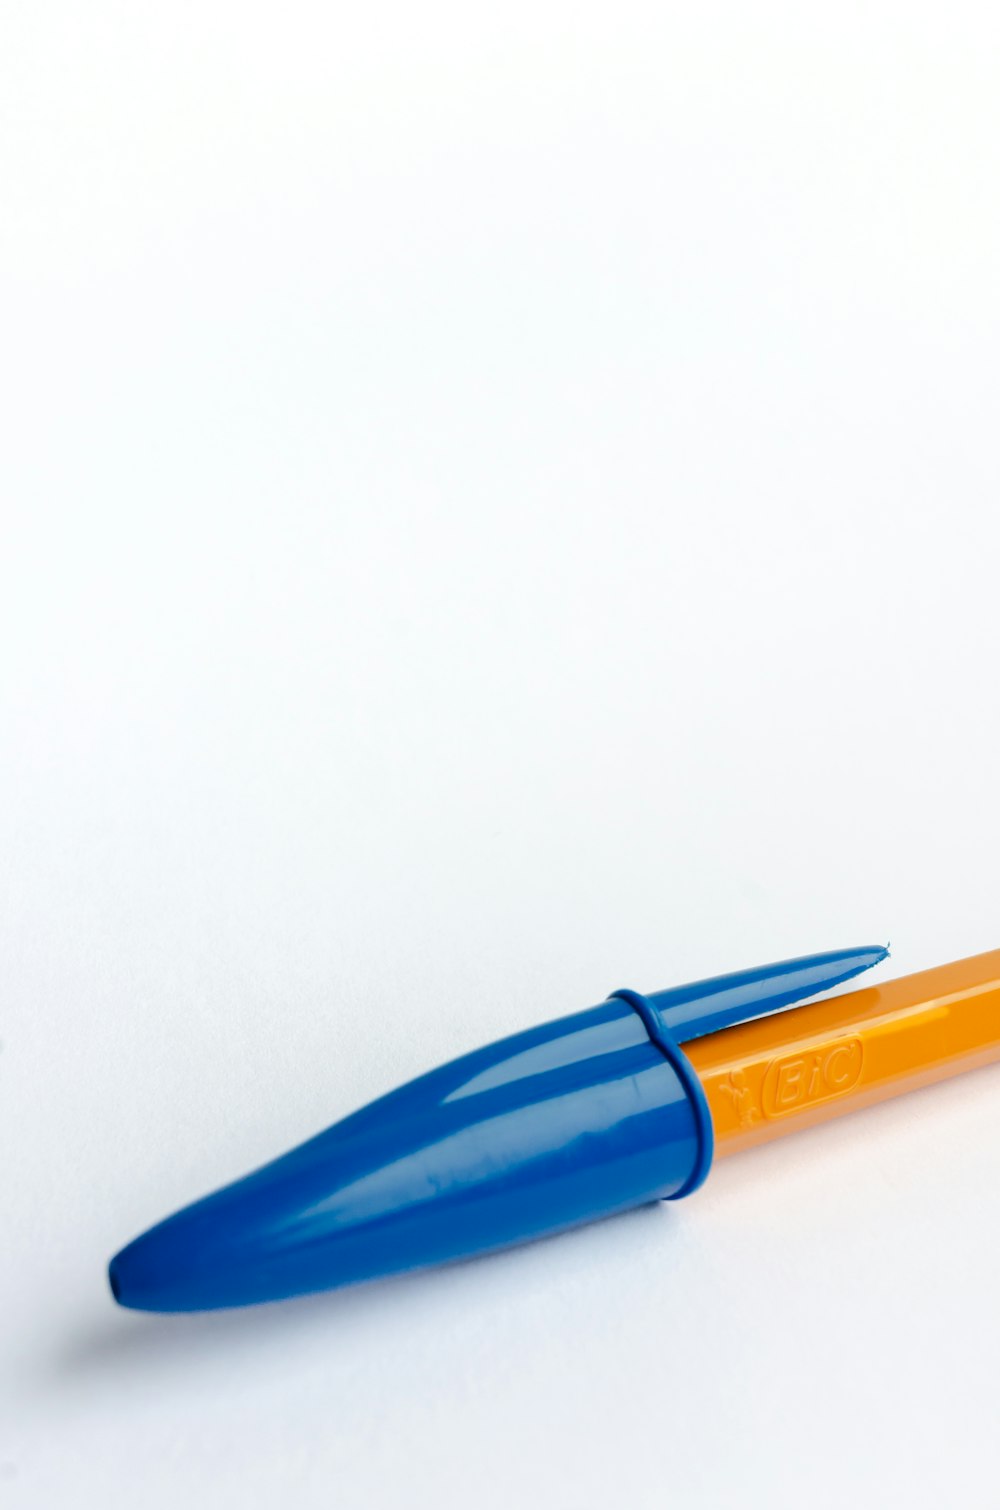 Ein blau-orangefarbener Stift sitzt auf einem weißen Tisch